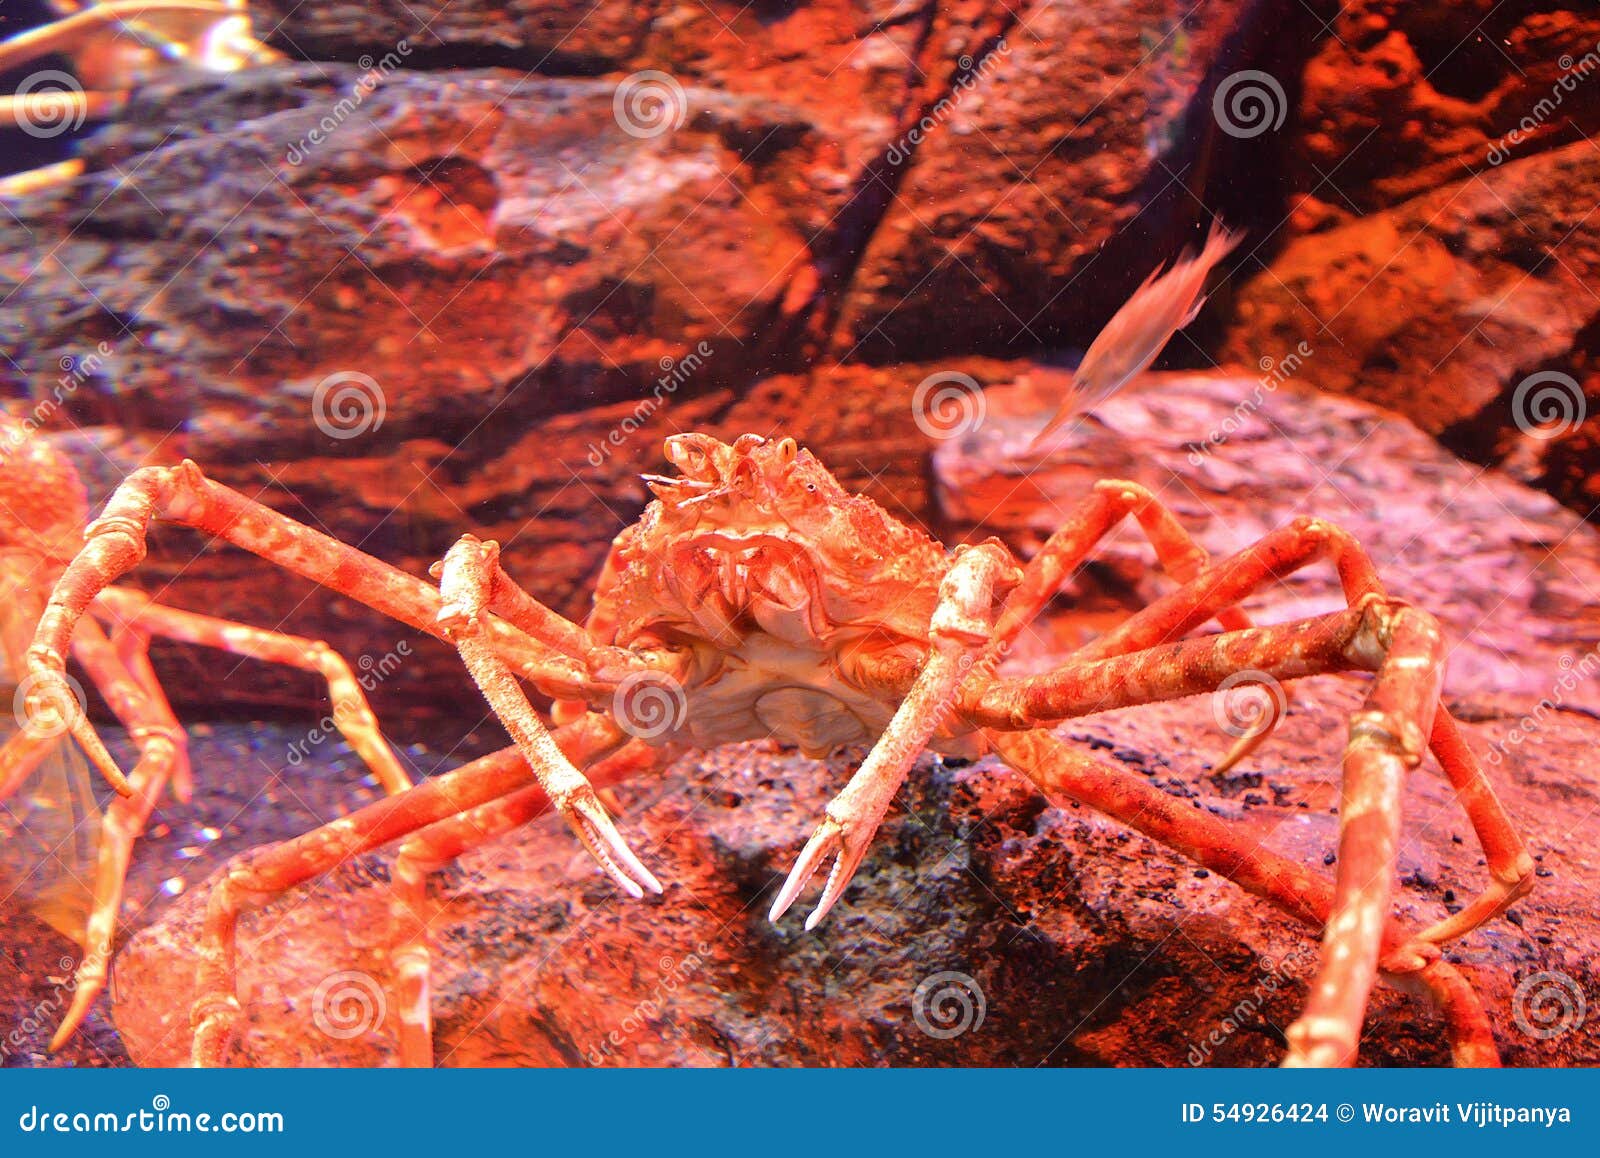 日本蜘蛛蟹或巨型蜘蛛蟹山樱 库存图片. 图片 包括有 聚会所, 一个, 充分, 日语, 照片, 日本, 配置文件 - 195881041